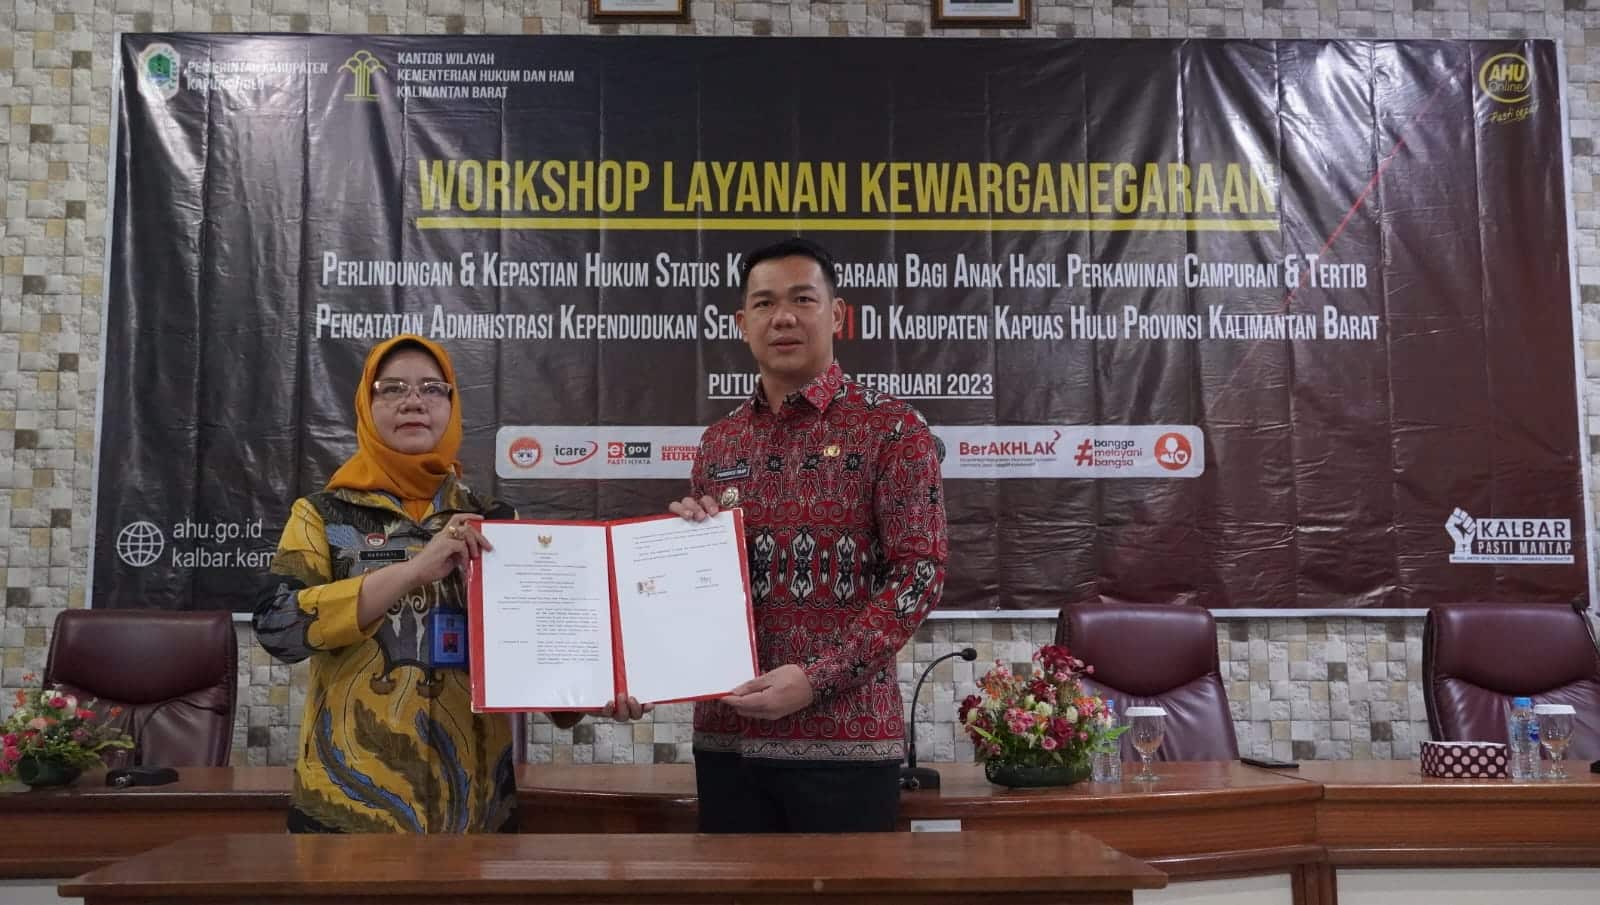 MoU antara Kantor Wilayah Kementerian Hukum dan HAM Kalimantan Barat dengan Pemerintah Kabupaten Kapuas Hulu tentang Pelayanan Hukum dan HAM. (Foto: Ishaq)